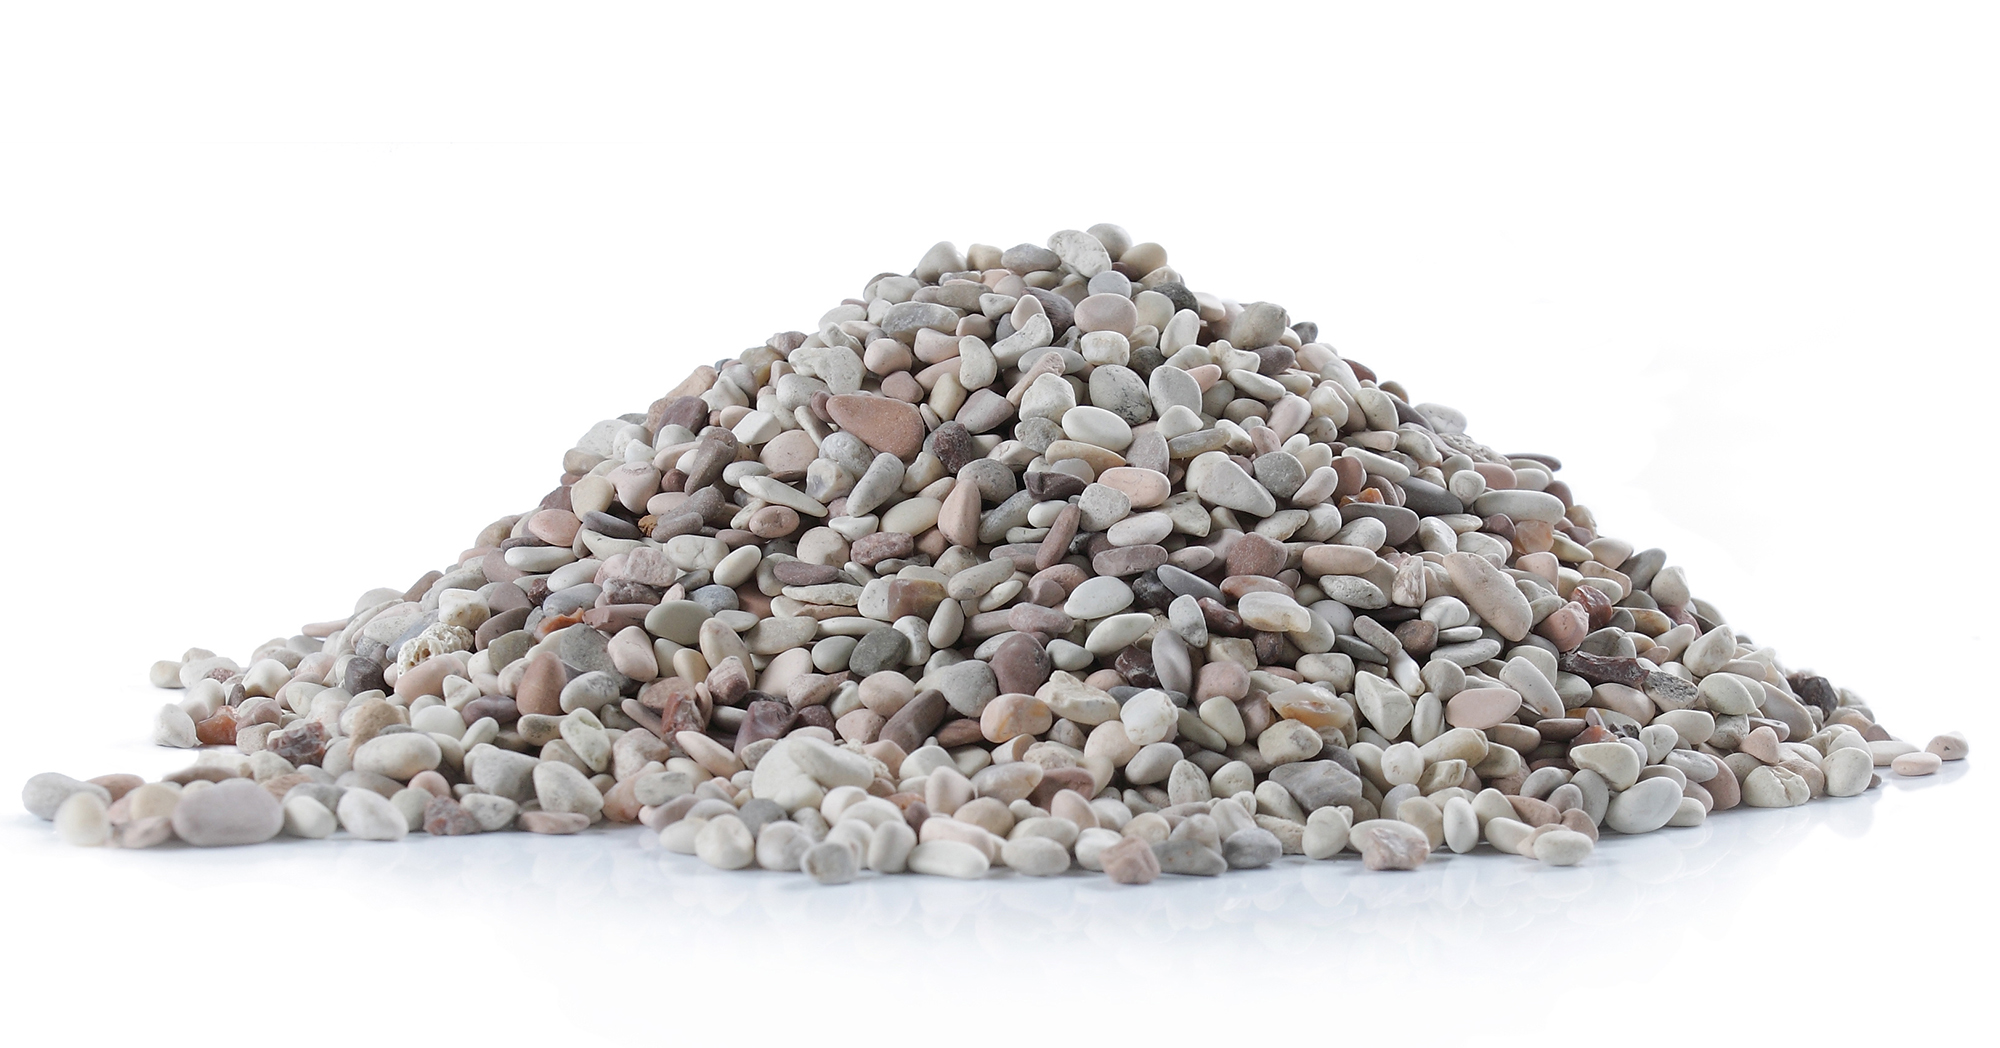 Pile of screened gravel